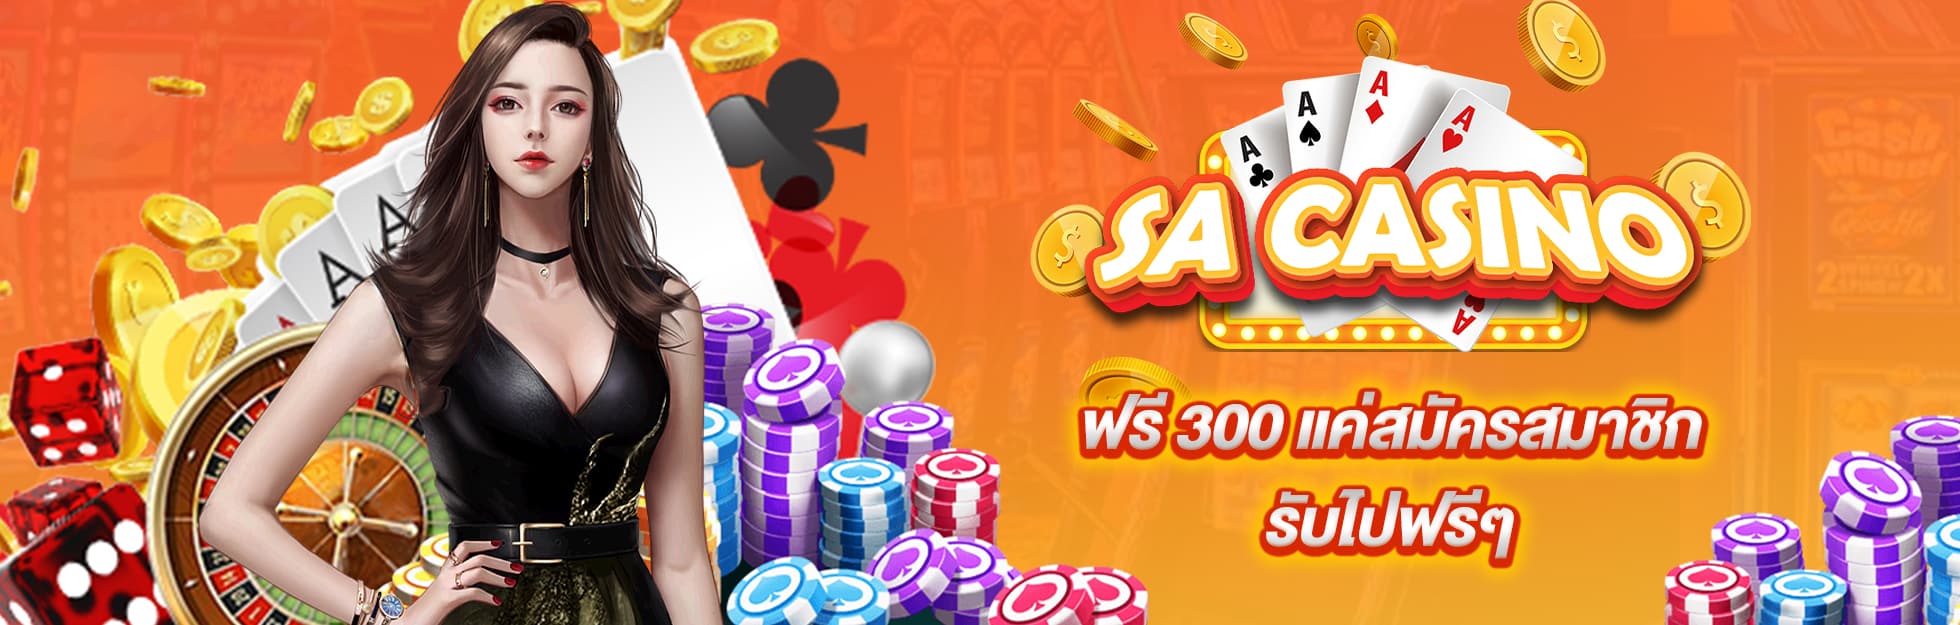 SA Casinoแจกฟรี300